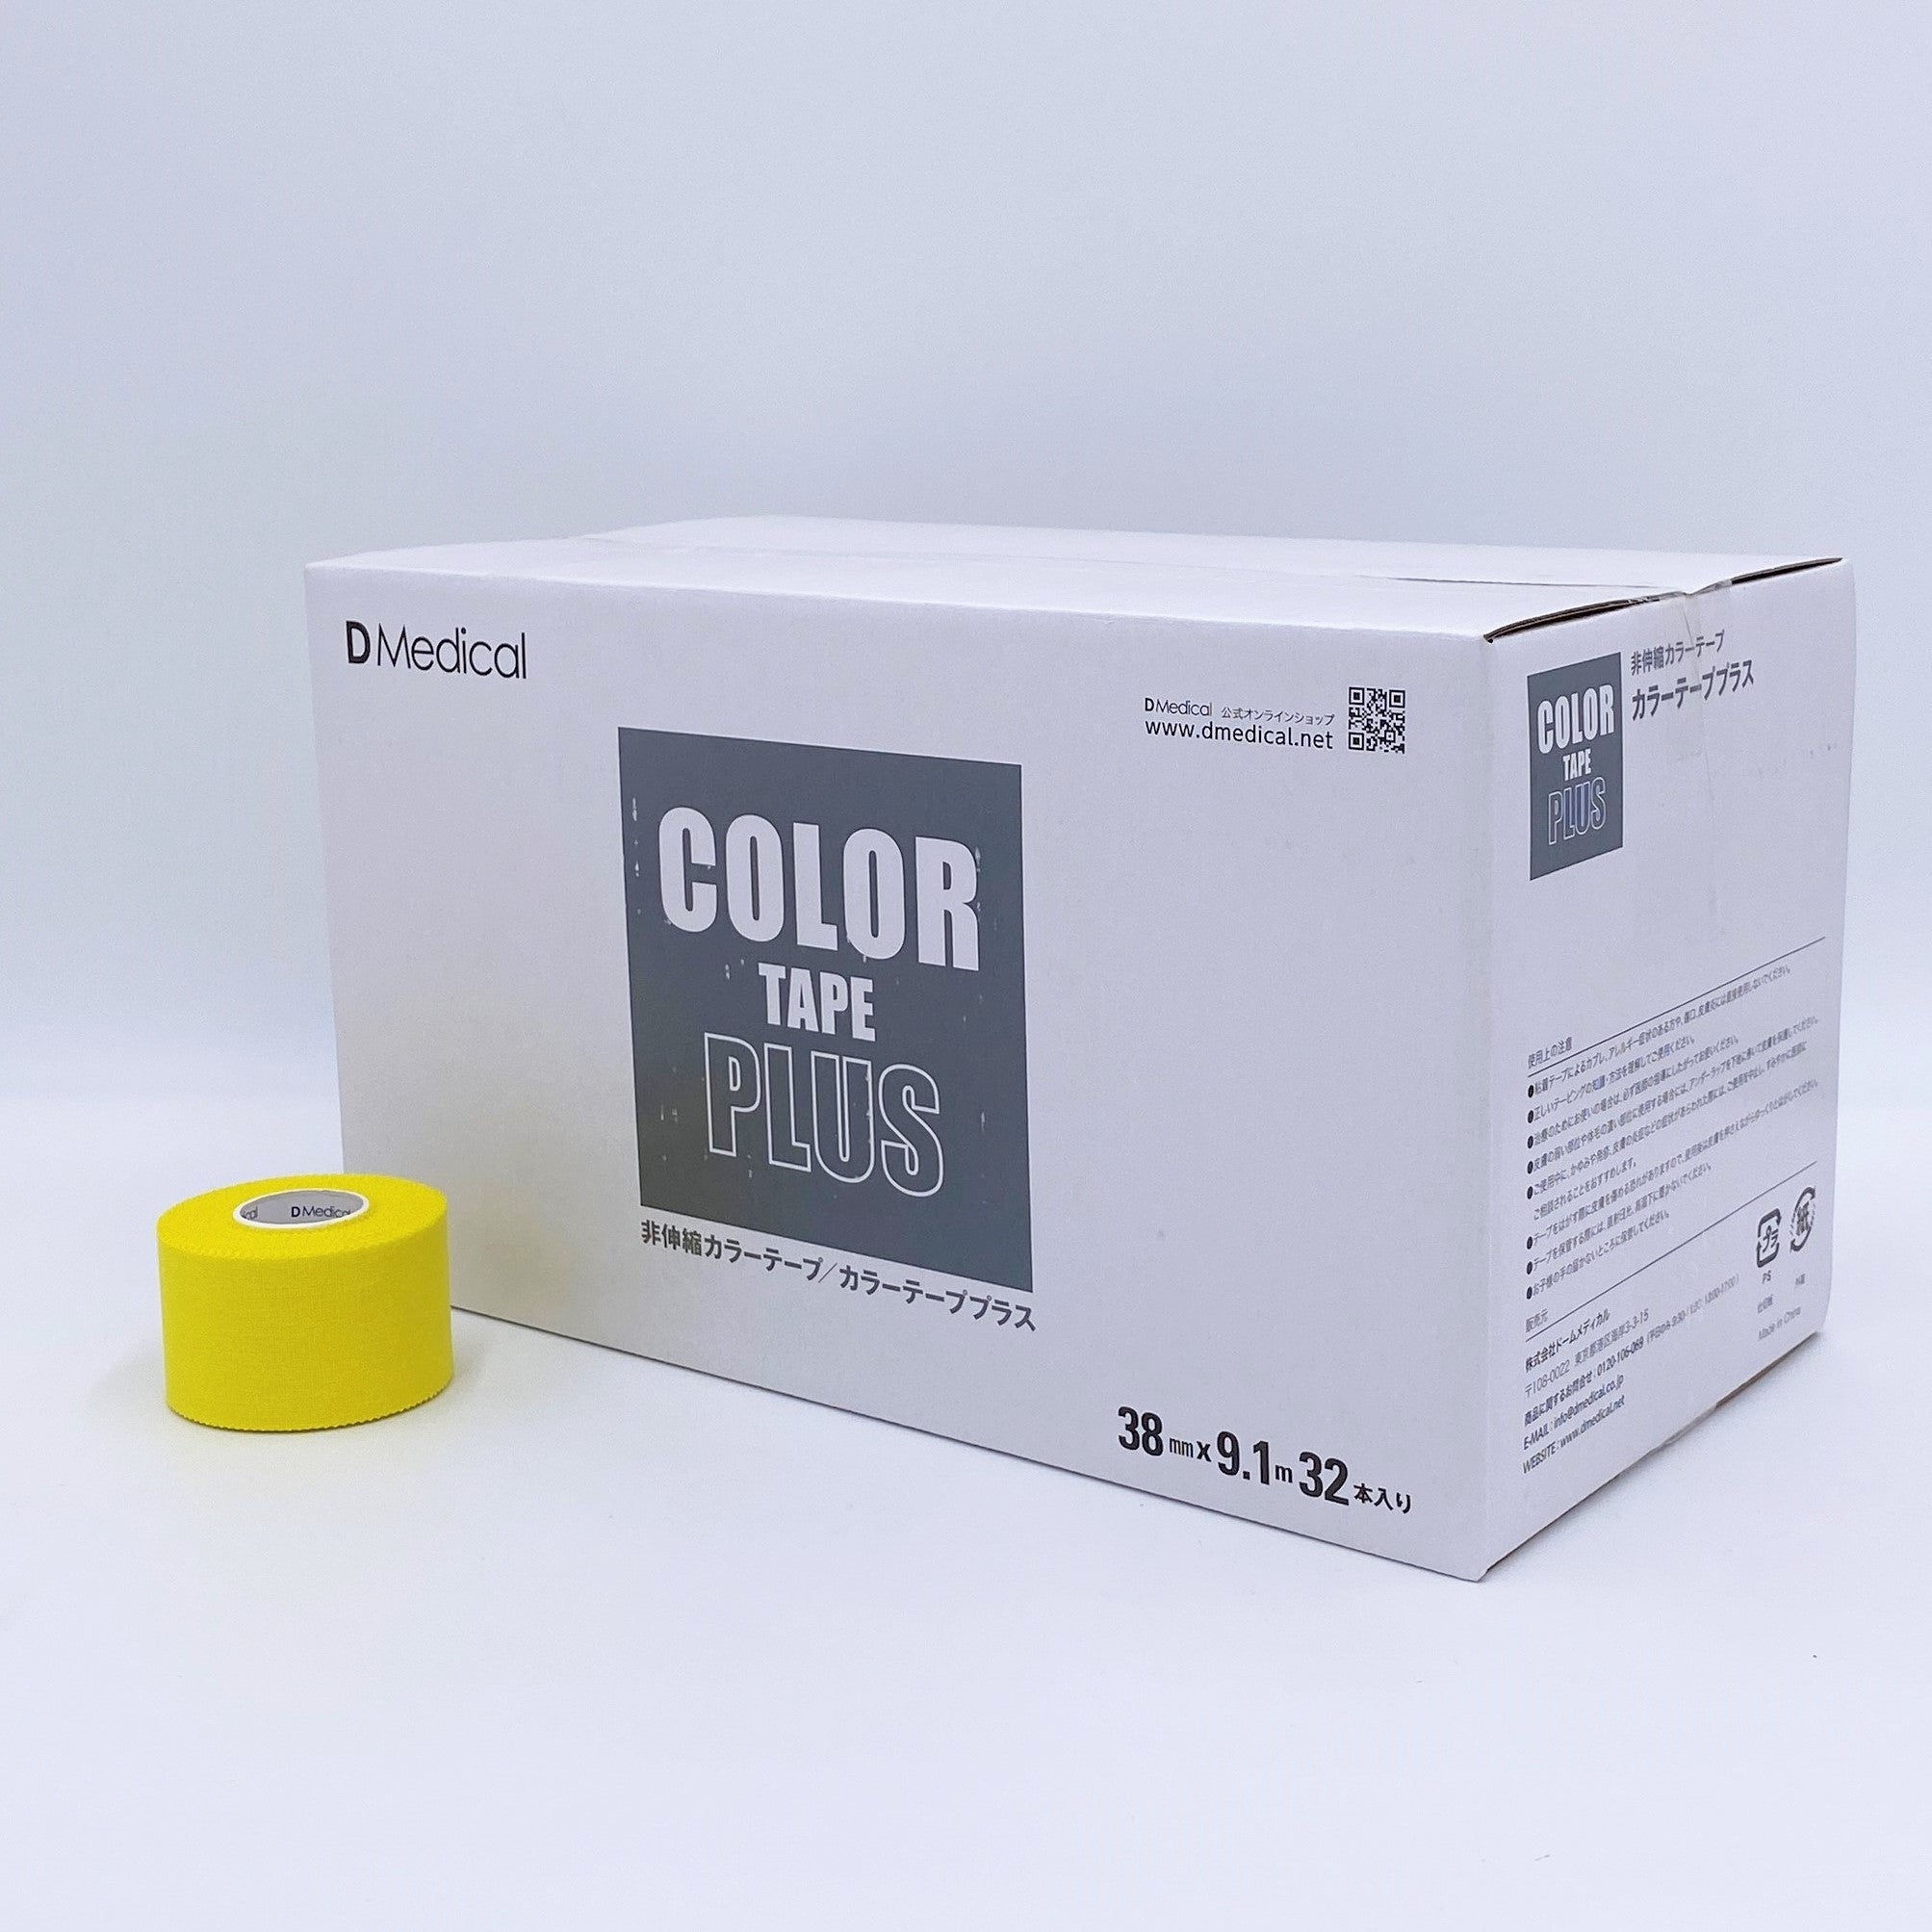 カラーテーププラス38mm 全８色 32本/箱 – テーピングの購入はDMedical公式通販